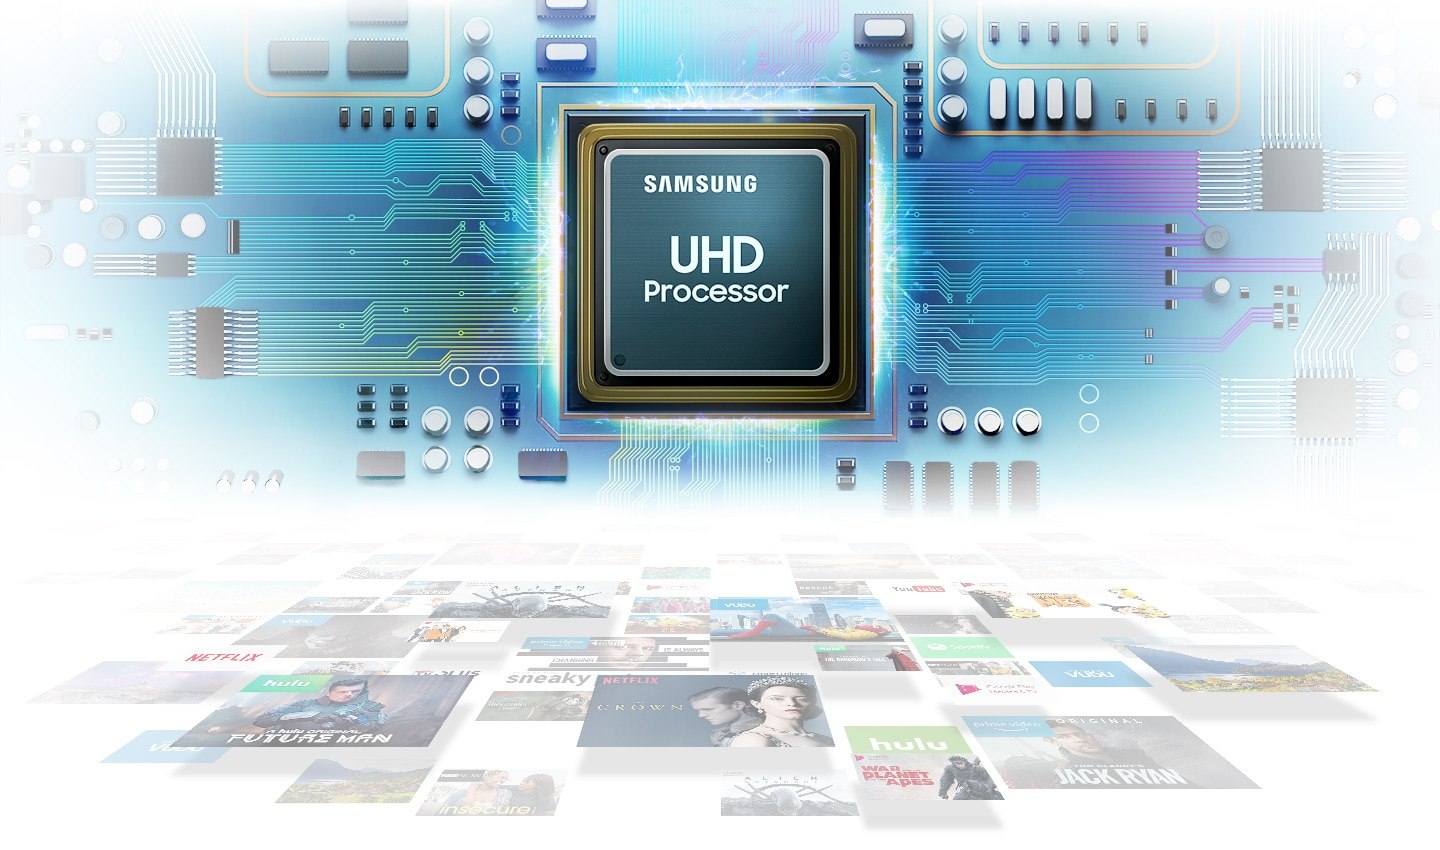 Procesor UHD - niesamowita jakość obrazu